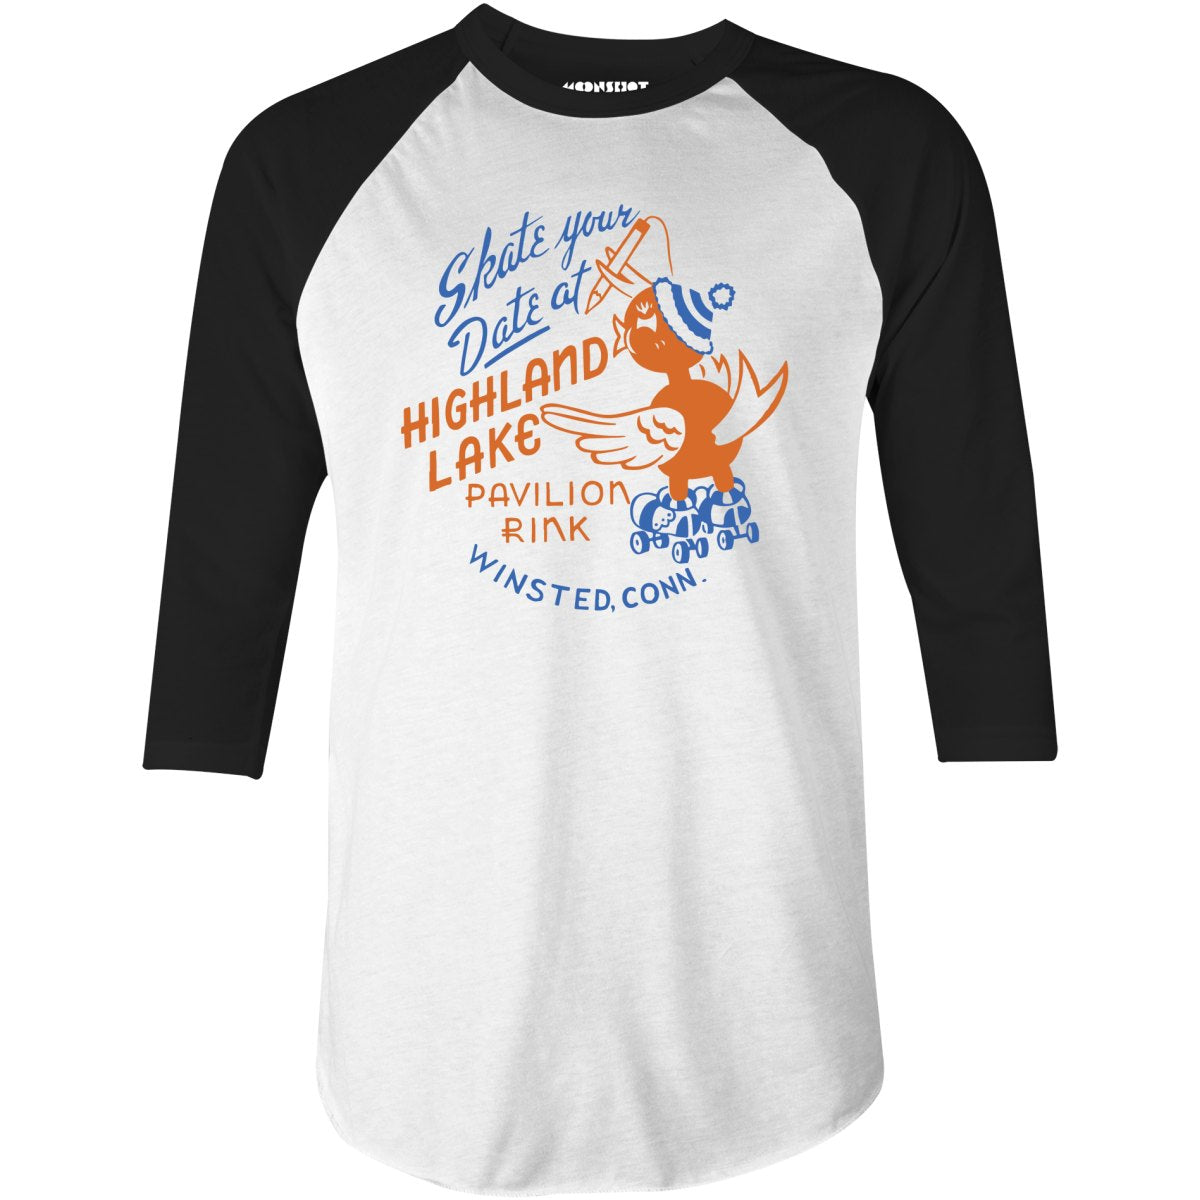 Highland Lake Pavilion Rink - Winsted, CT - Vintage Roller Rink - 3/4 Sleeve Raglan T-Shirt